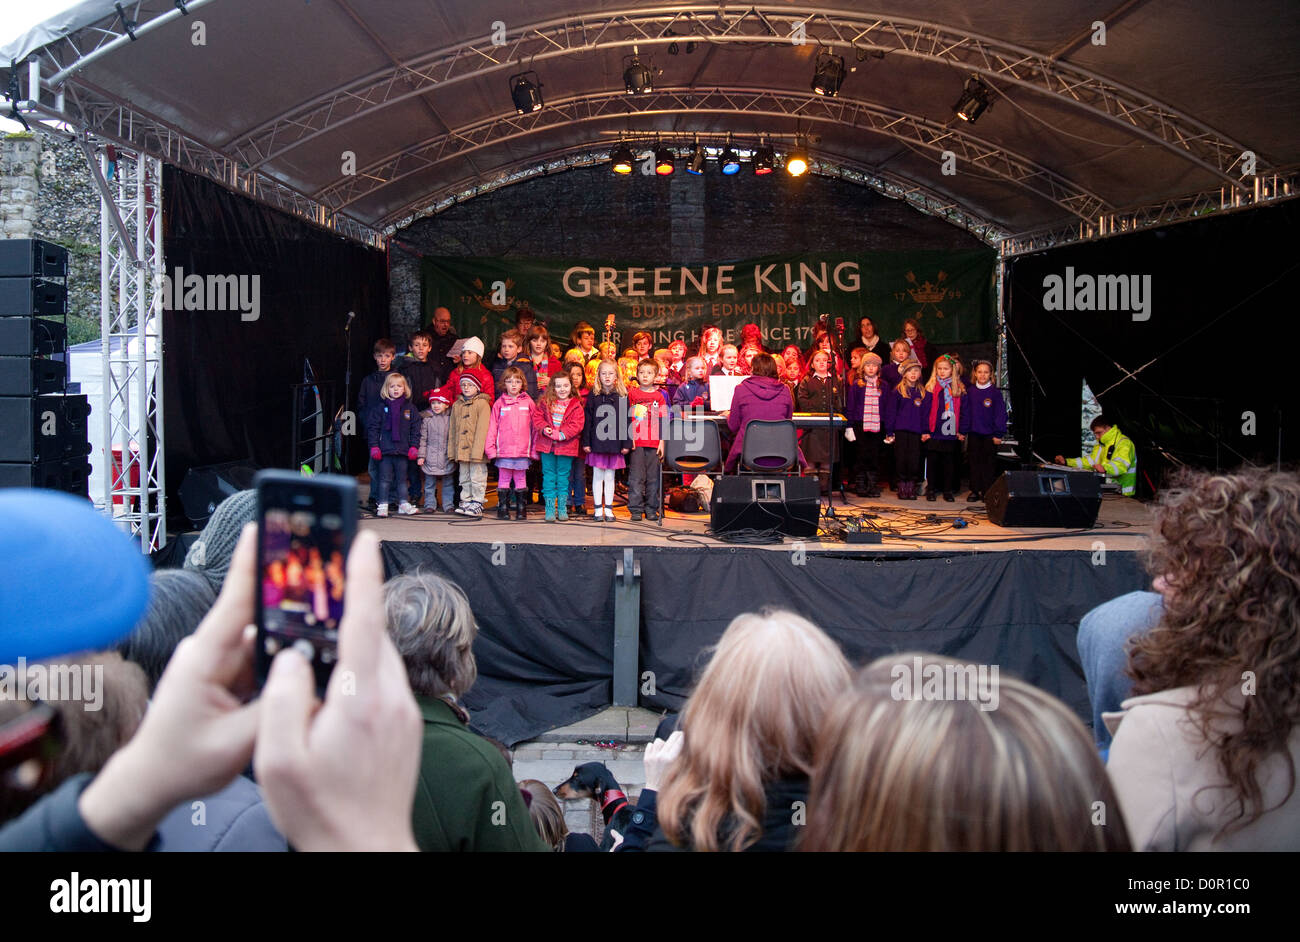 Les enfants de l'école primaire de chanter sur scène en public, marché de Noël de Bury St Edmunds, Suffolk Angleterre UK Banque D'Images